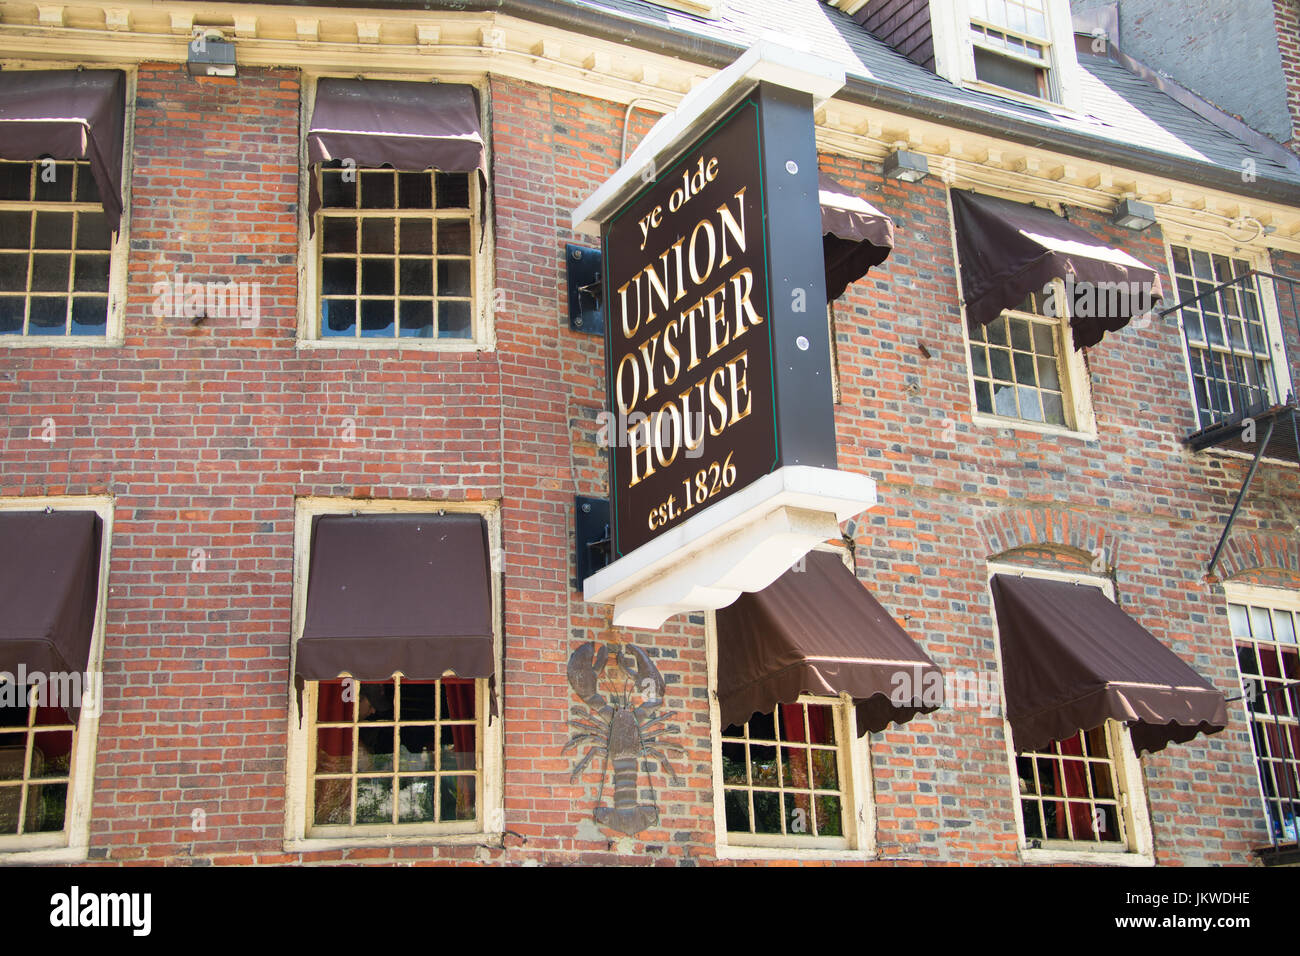 Ye Olde Union Oyster House, Boston, MA, USA Stock Photo